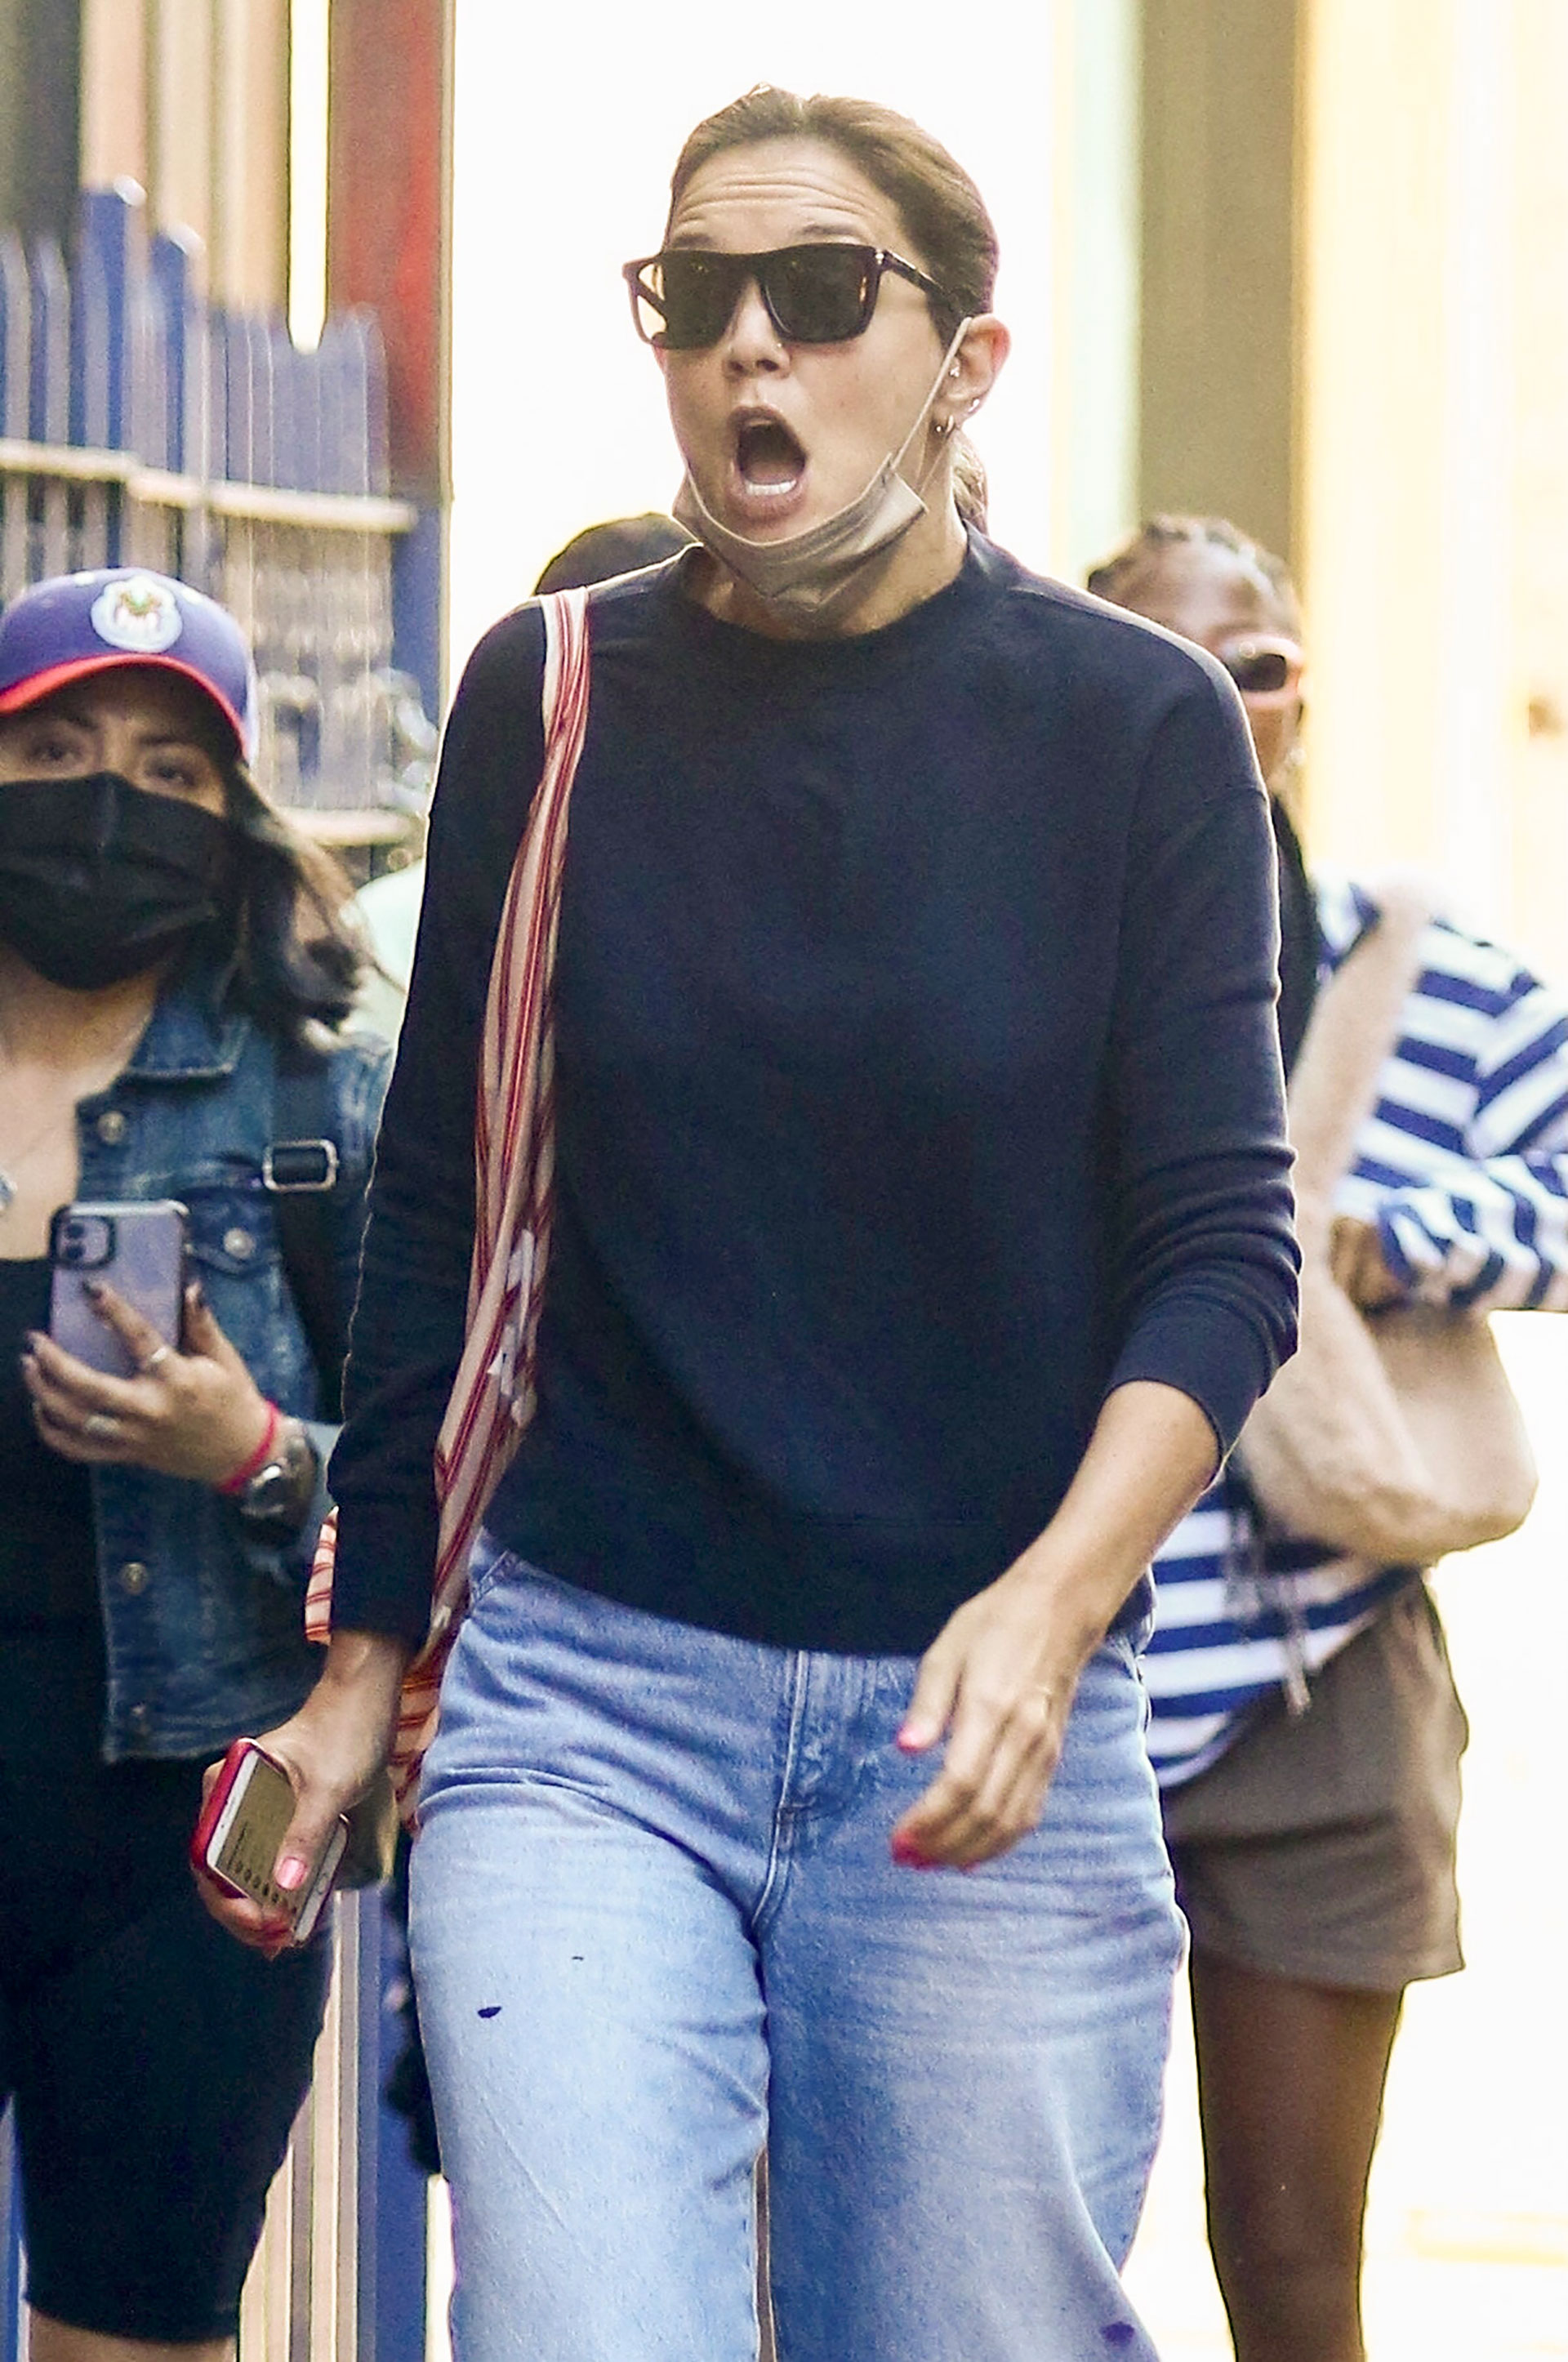 Katie Holmes fue fotografiada durante un paseo por las calles de Nueva York y mientras hacía un show de gestos con su cara. La actriz llevó un jean, un sweater azul, una cartera a rayas, lentes de sol y su tapabocas sobre la pera (Fotos: The Grosby Group)